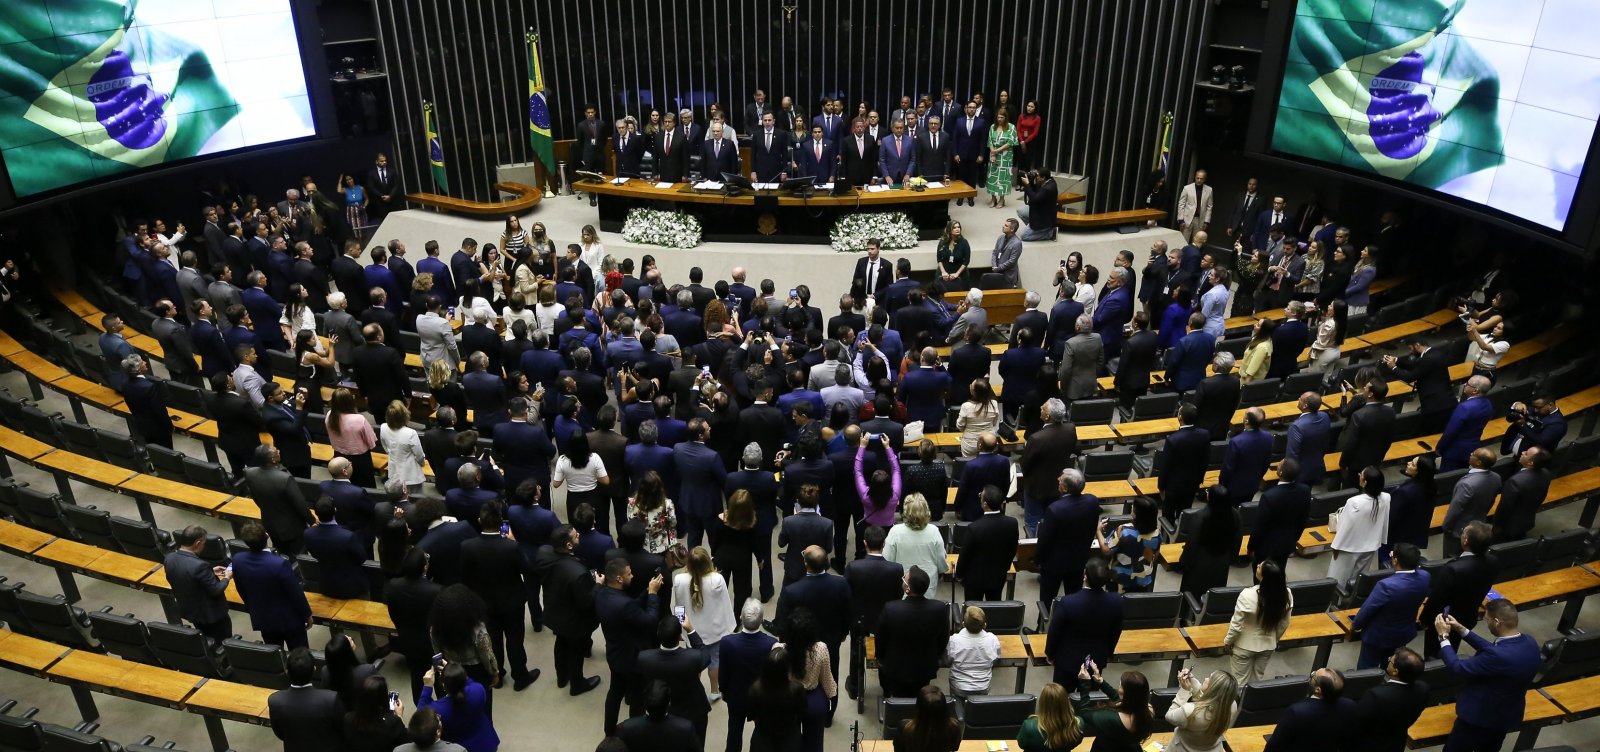 Planalto bloqueia repasse de emendas de comissão ao Congresso